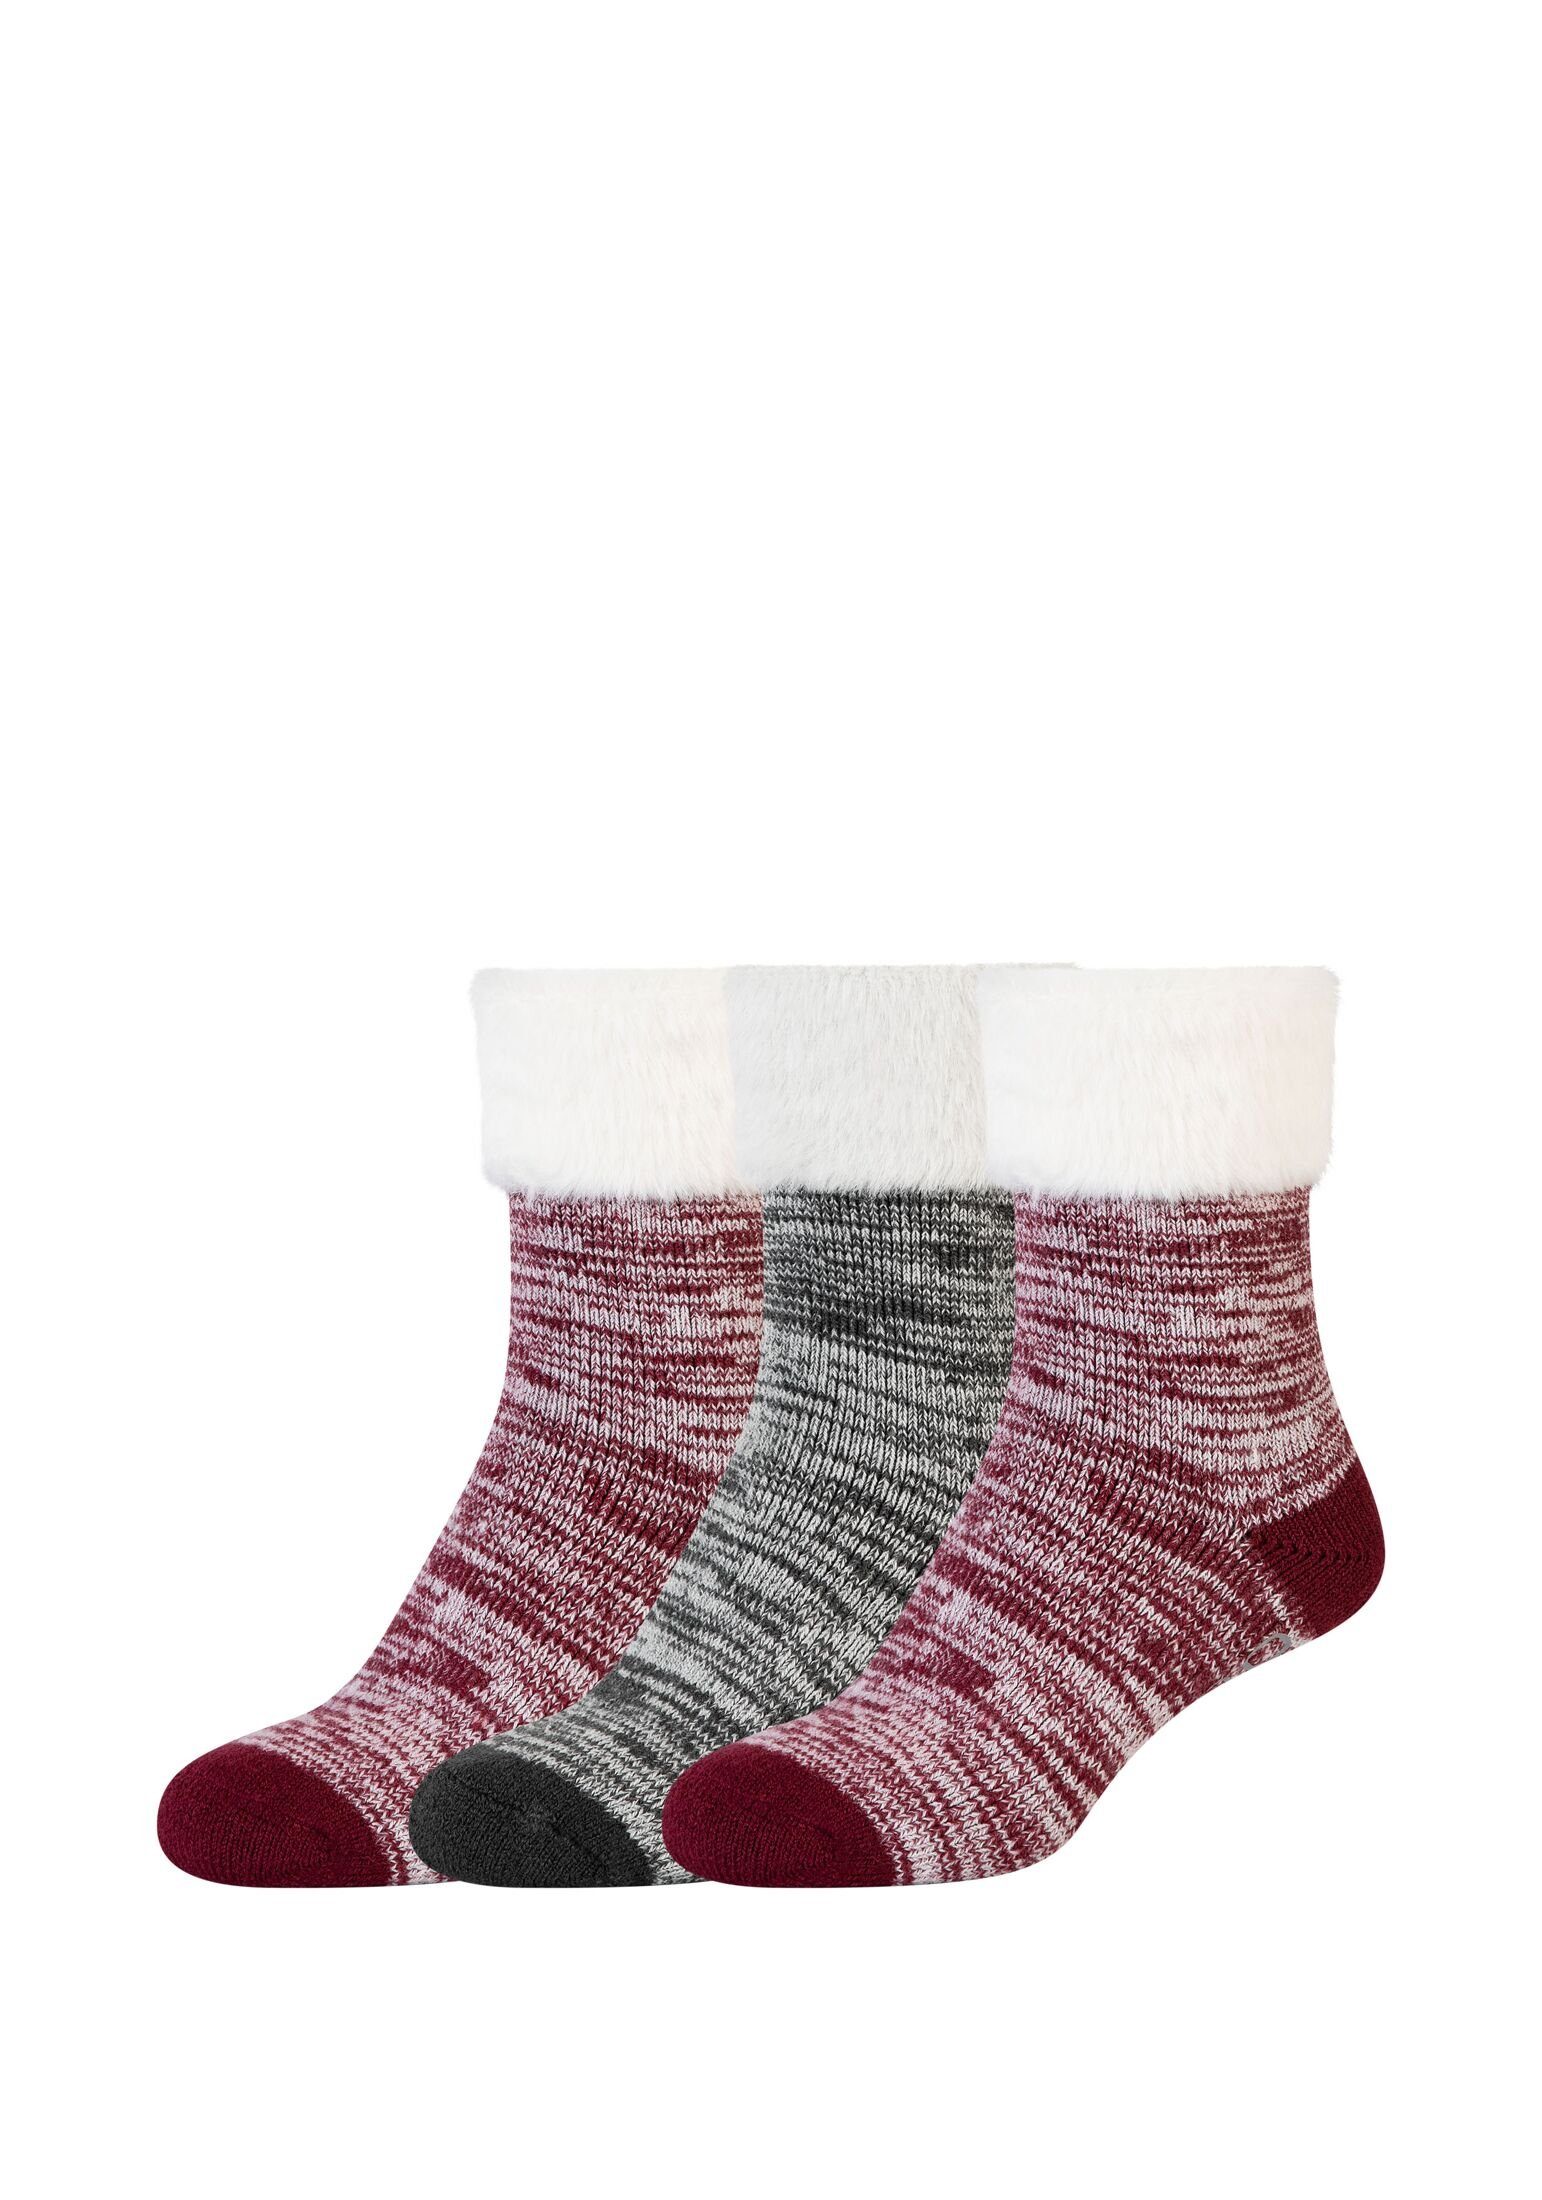 Camano Socken Socken 3er Pack